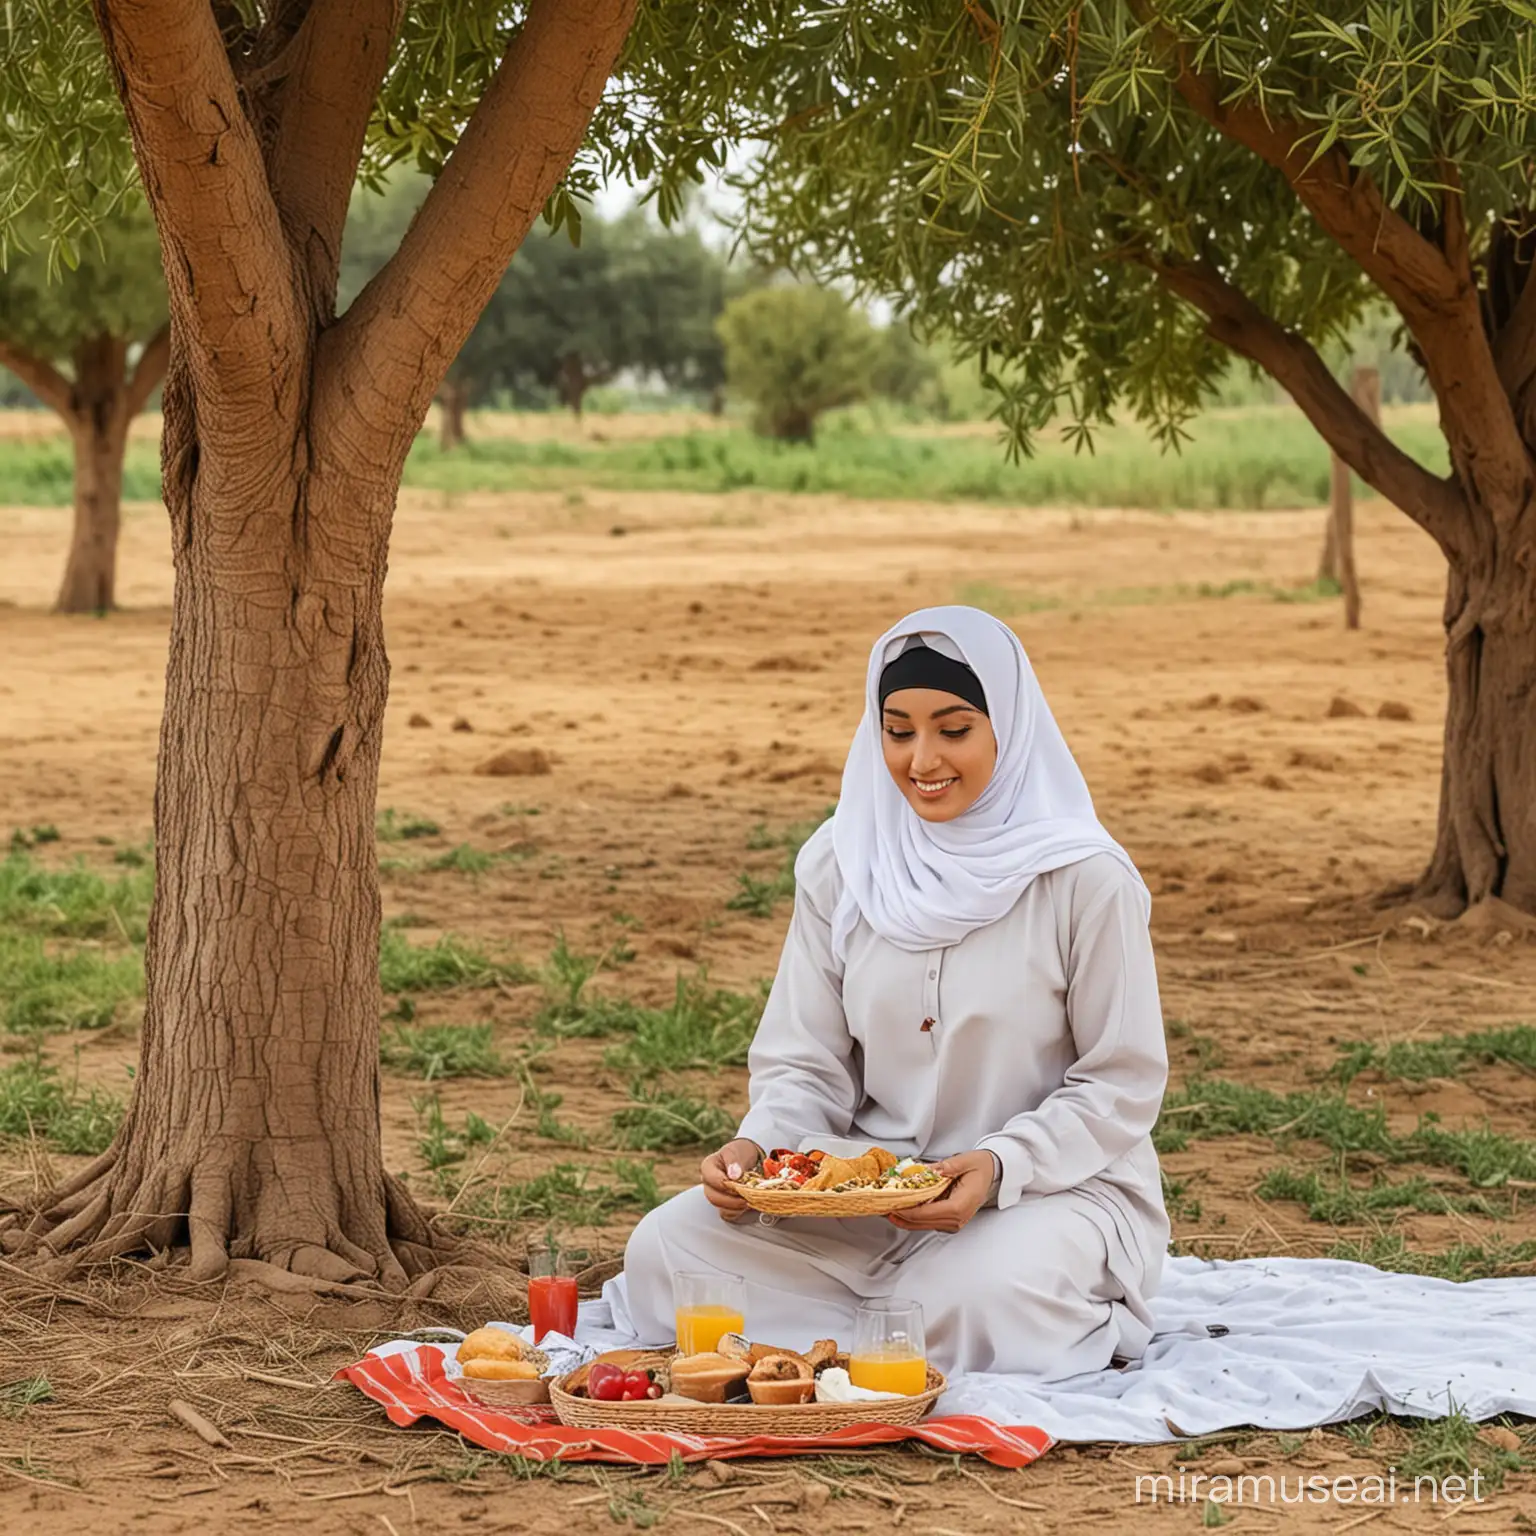 Egyptian Hijab Woman Enjoying Lunch in Farm Field Shade